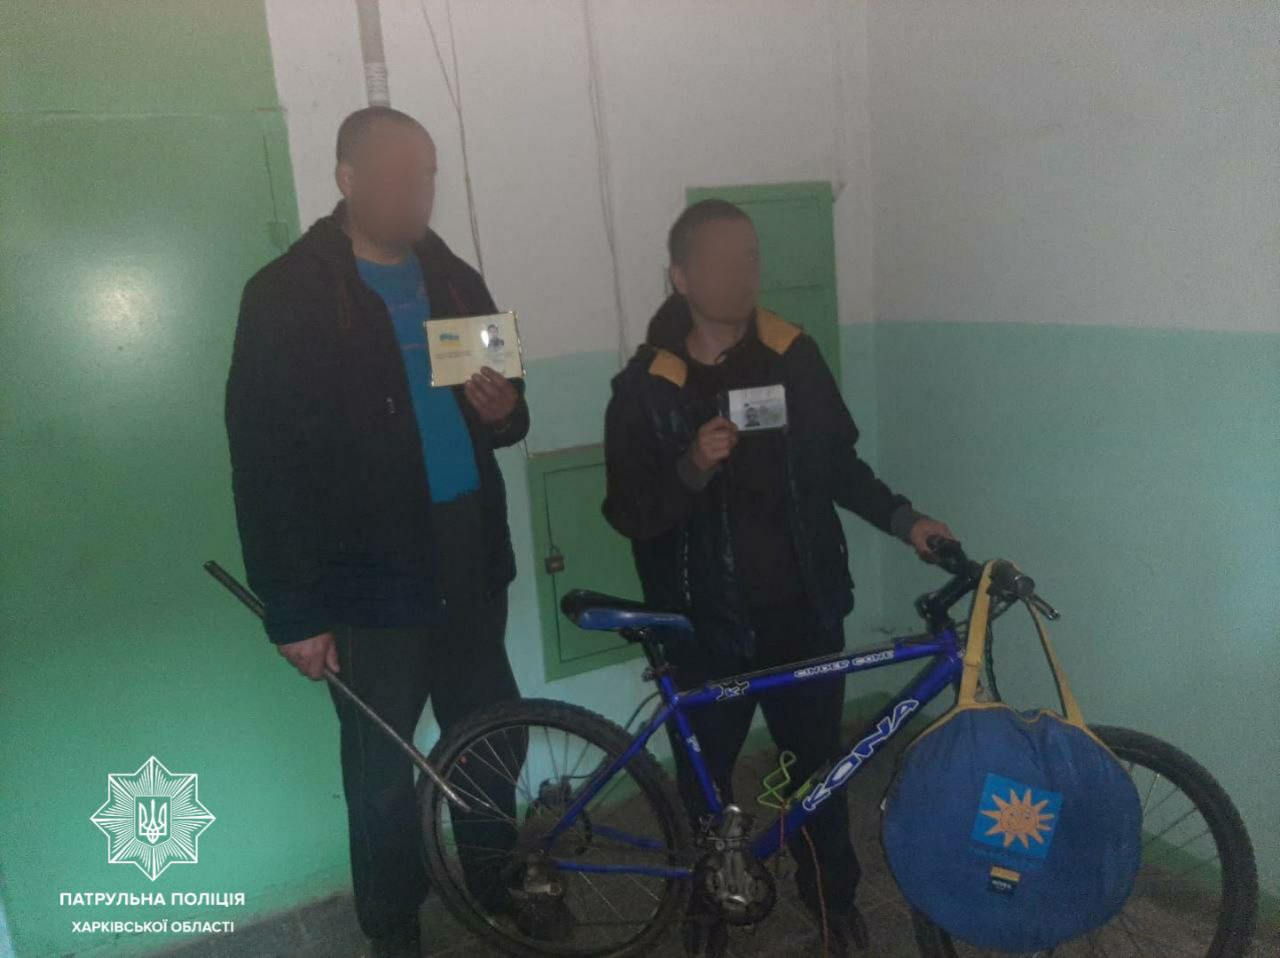 Криминал Харьков: Пойманы мародеры, укравшие велосипед из подъезда дома